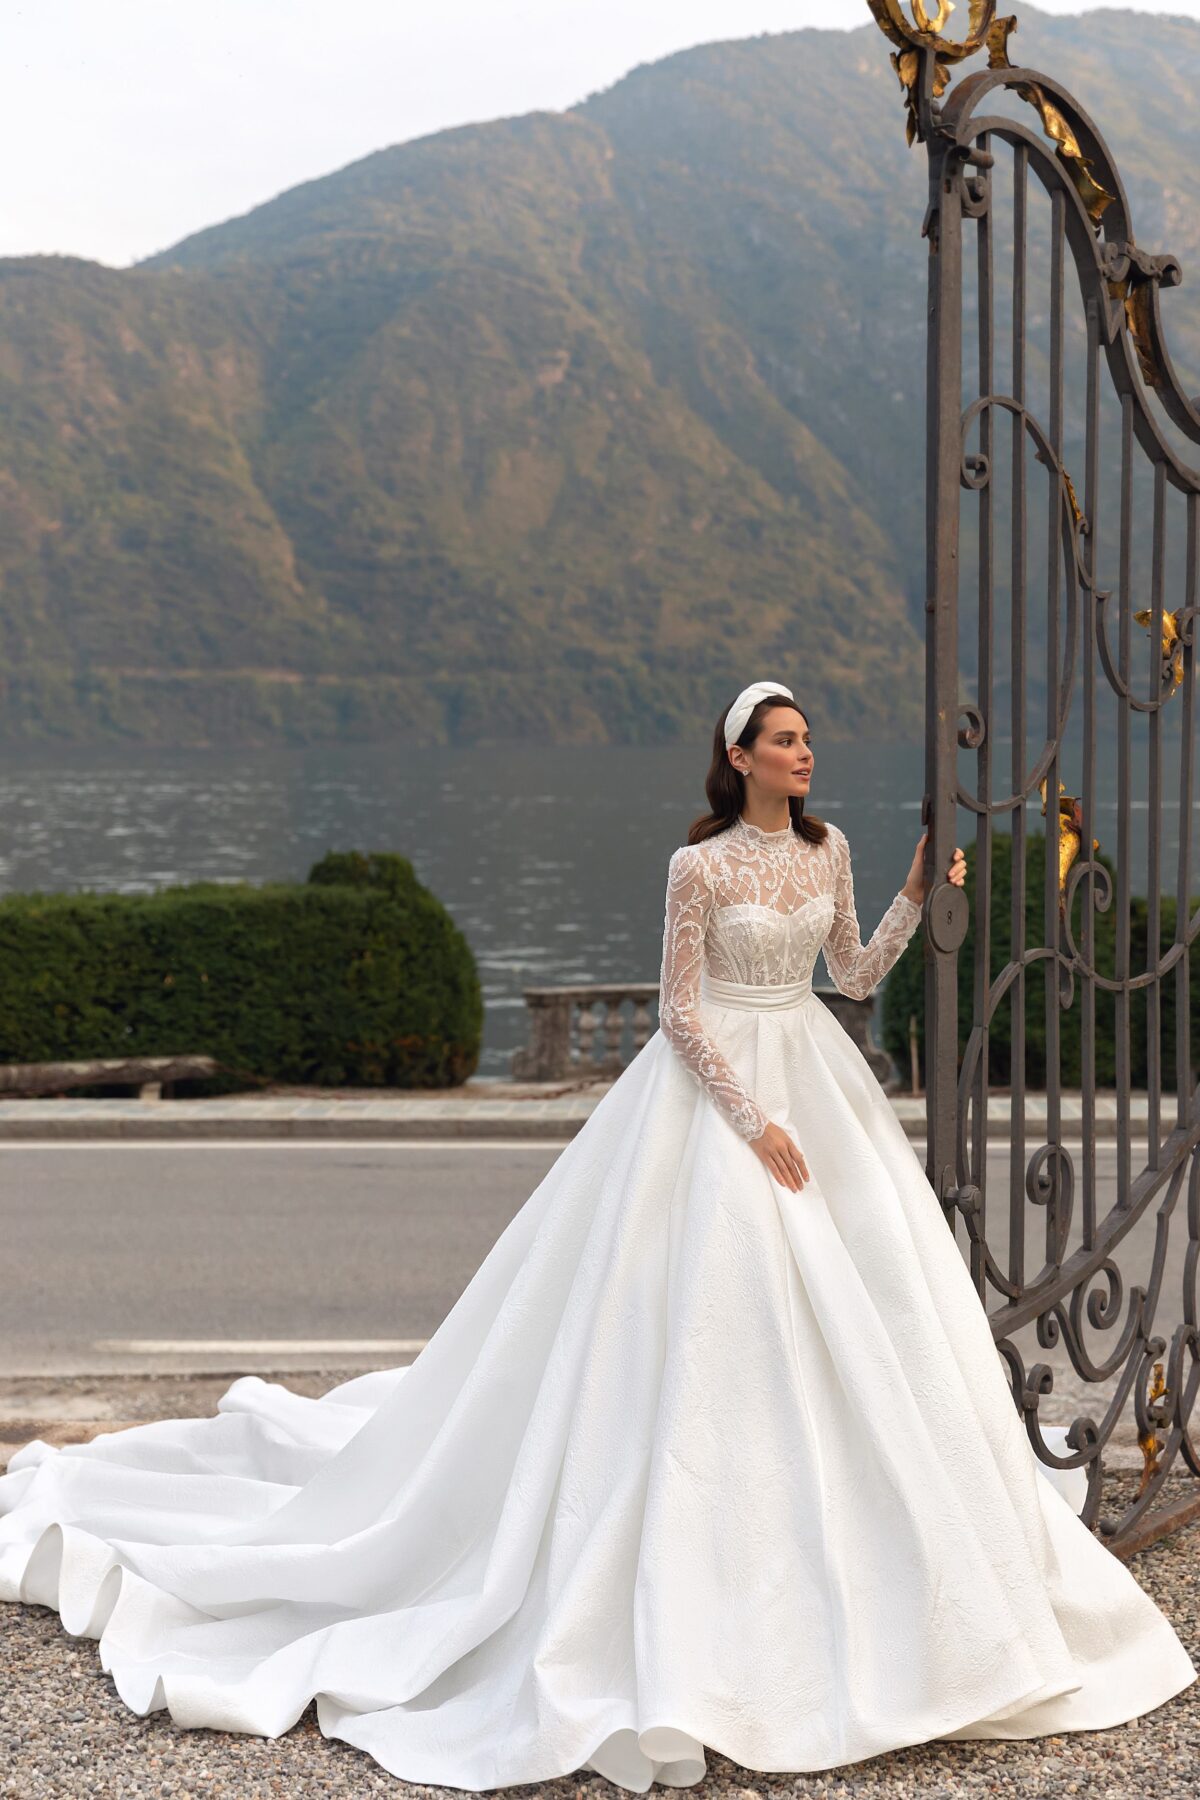 2023 wedding dress trends - High Neck long sleeves ball gown - Pollardi - Luigina